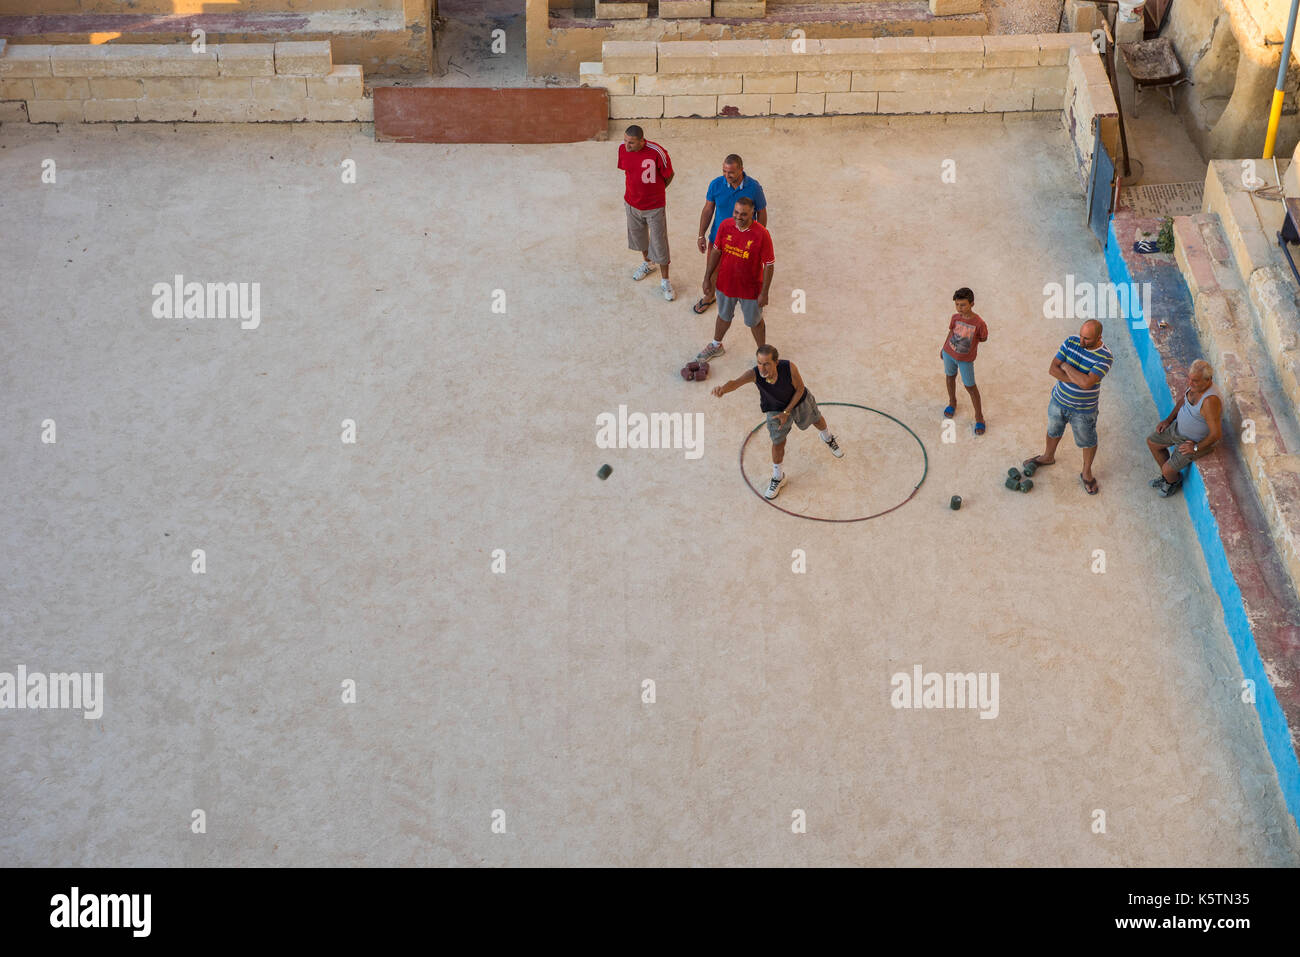 La Valette, Malte - 21 août 2017 : les habitants de la valette à jouer à la pétanque (pétanque) dans une aire de jeu. bocci ball est un sport étroitement lié à br Banque D'Images